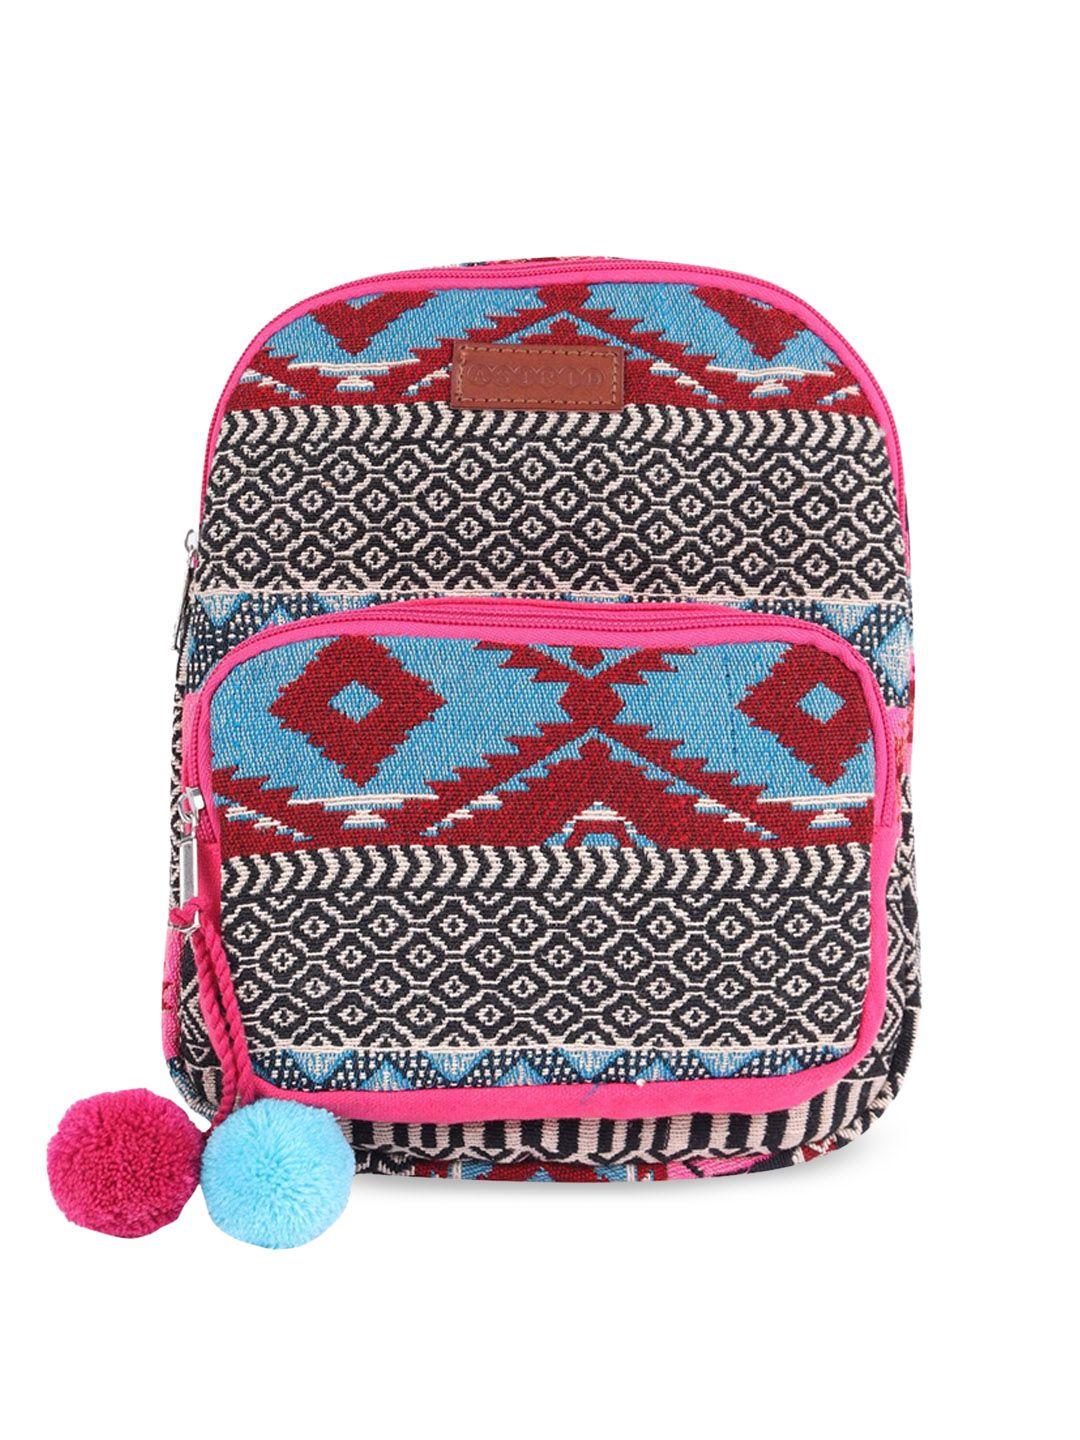 astrid girls pink geometric tasselled backpack